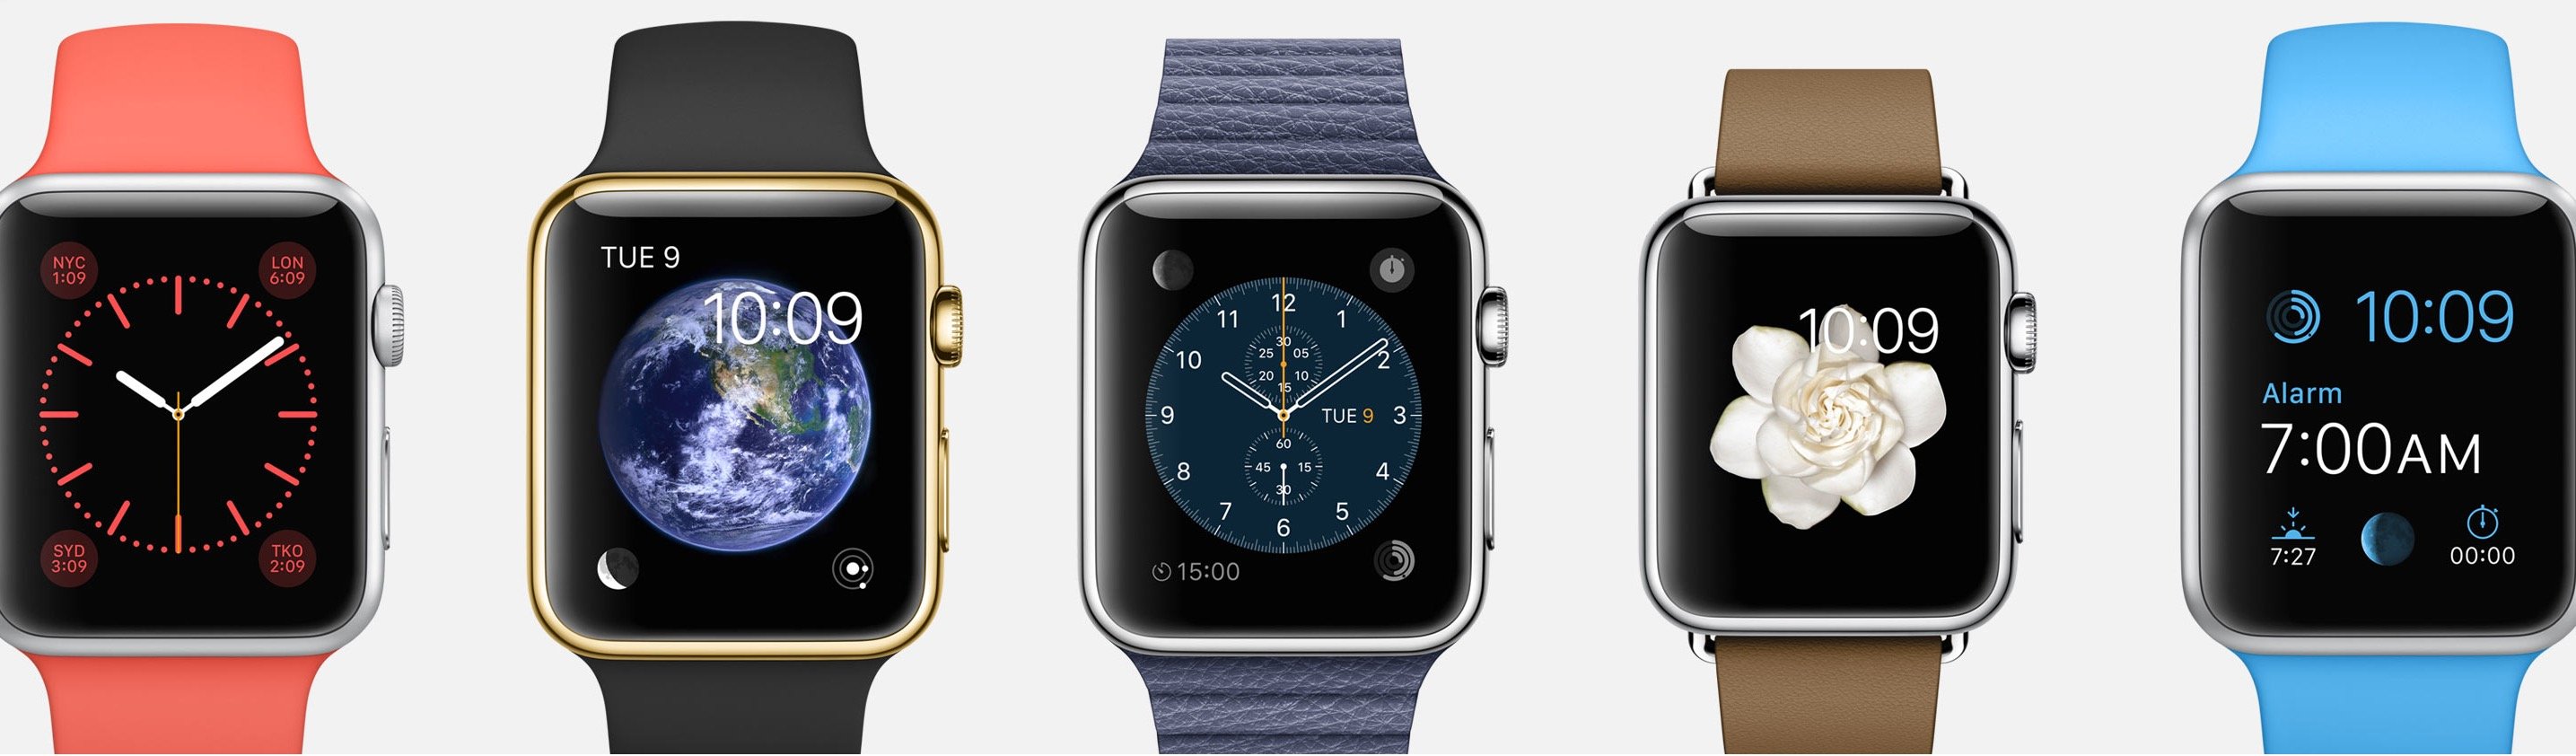 Apple Watch Release, Price & Feature Breakdown